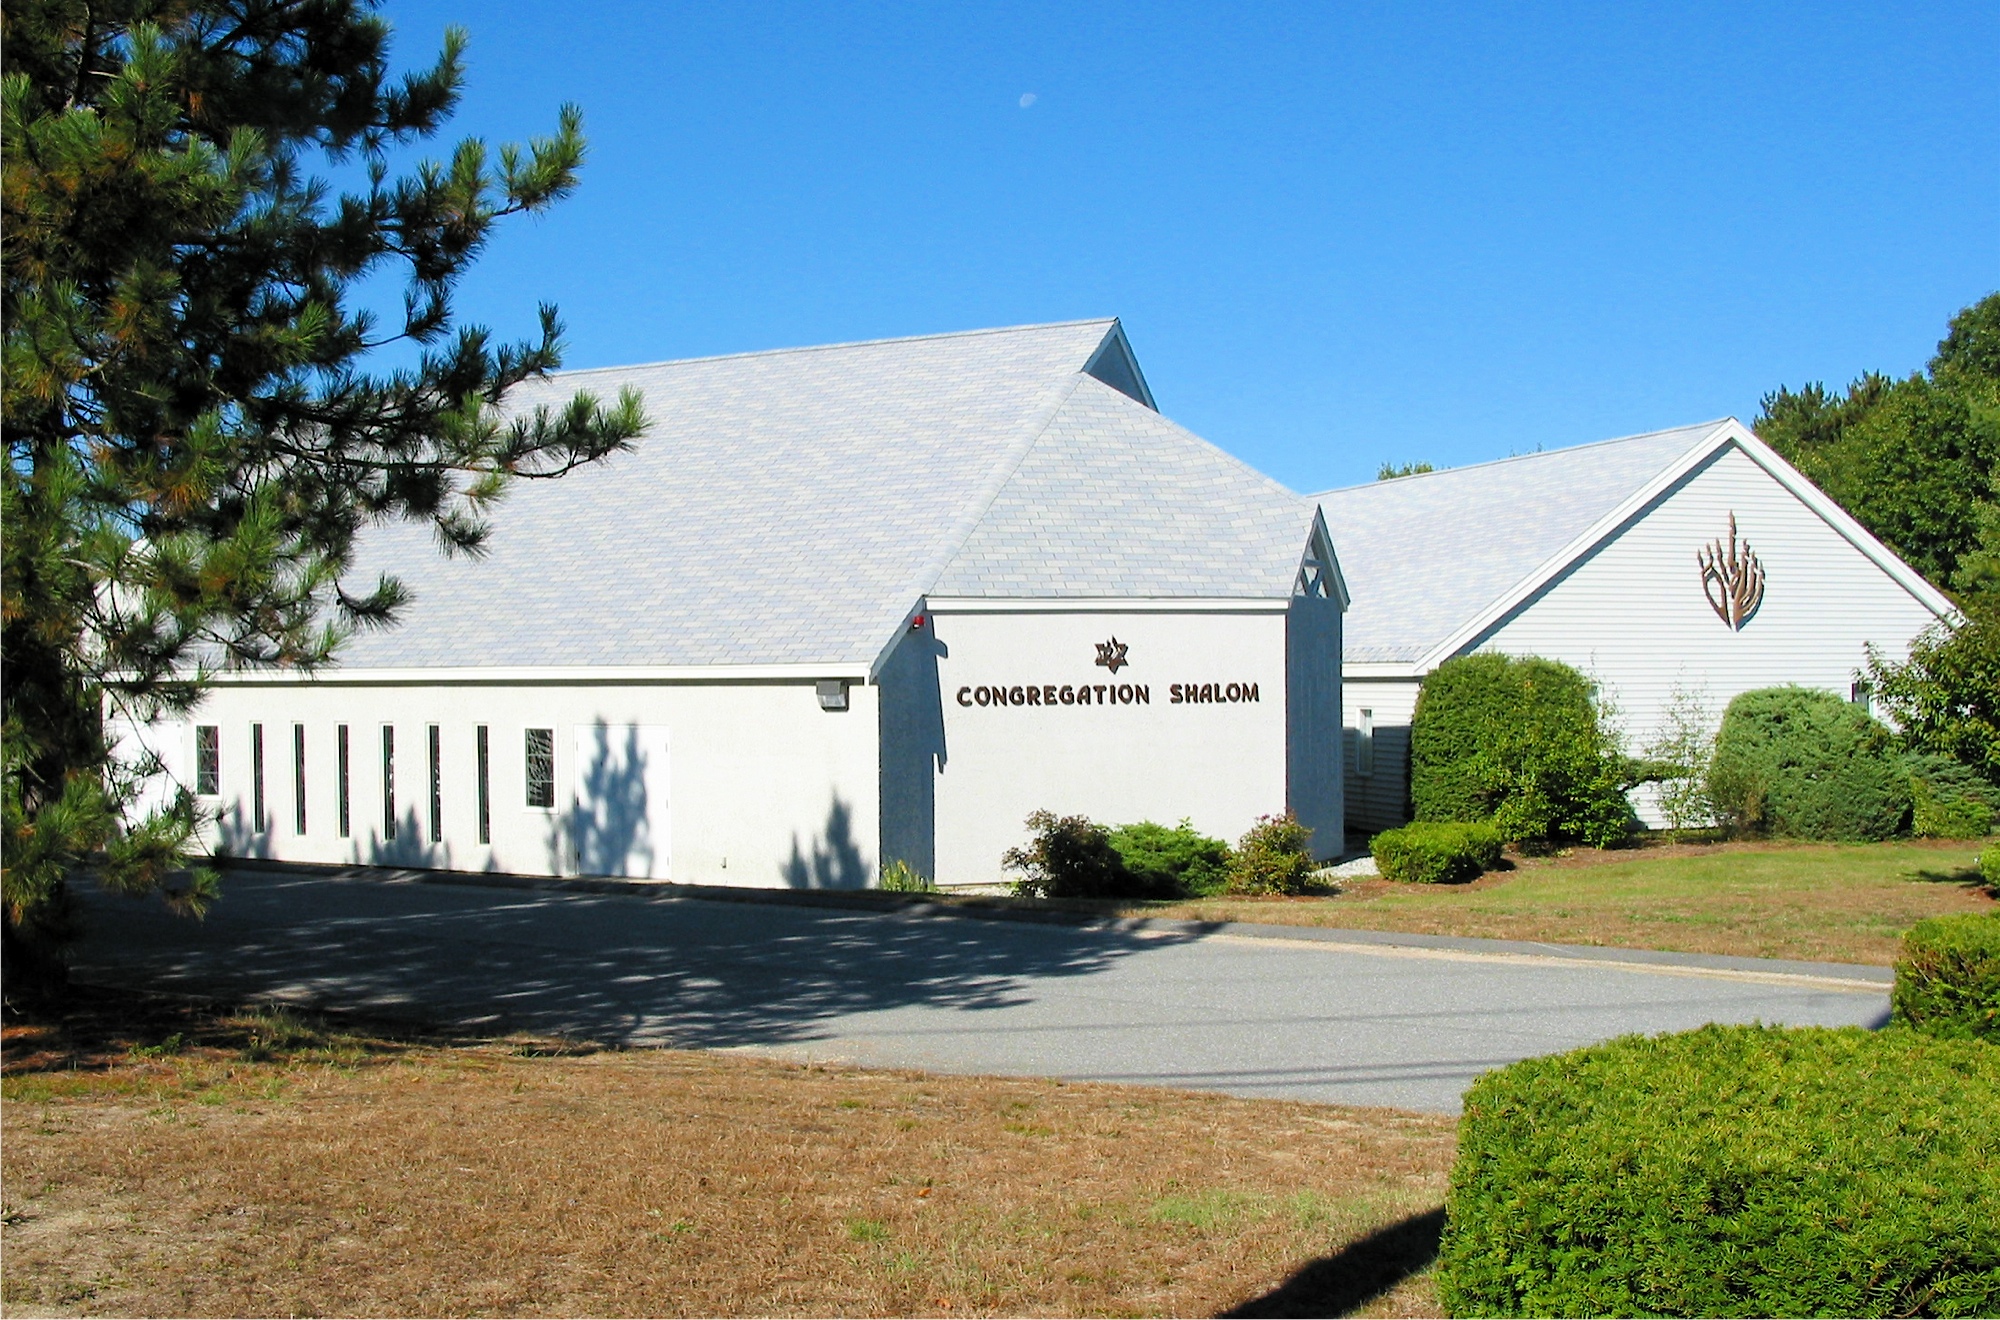 congregation shalom building exterior